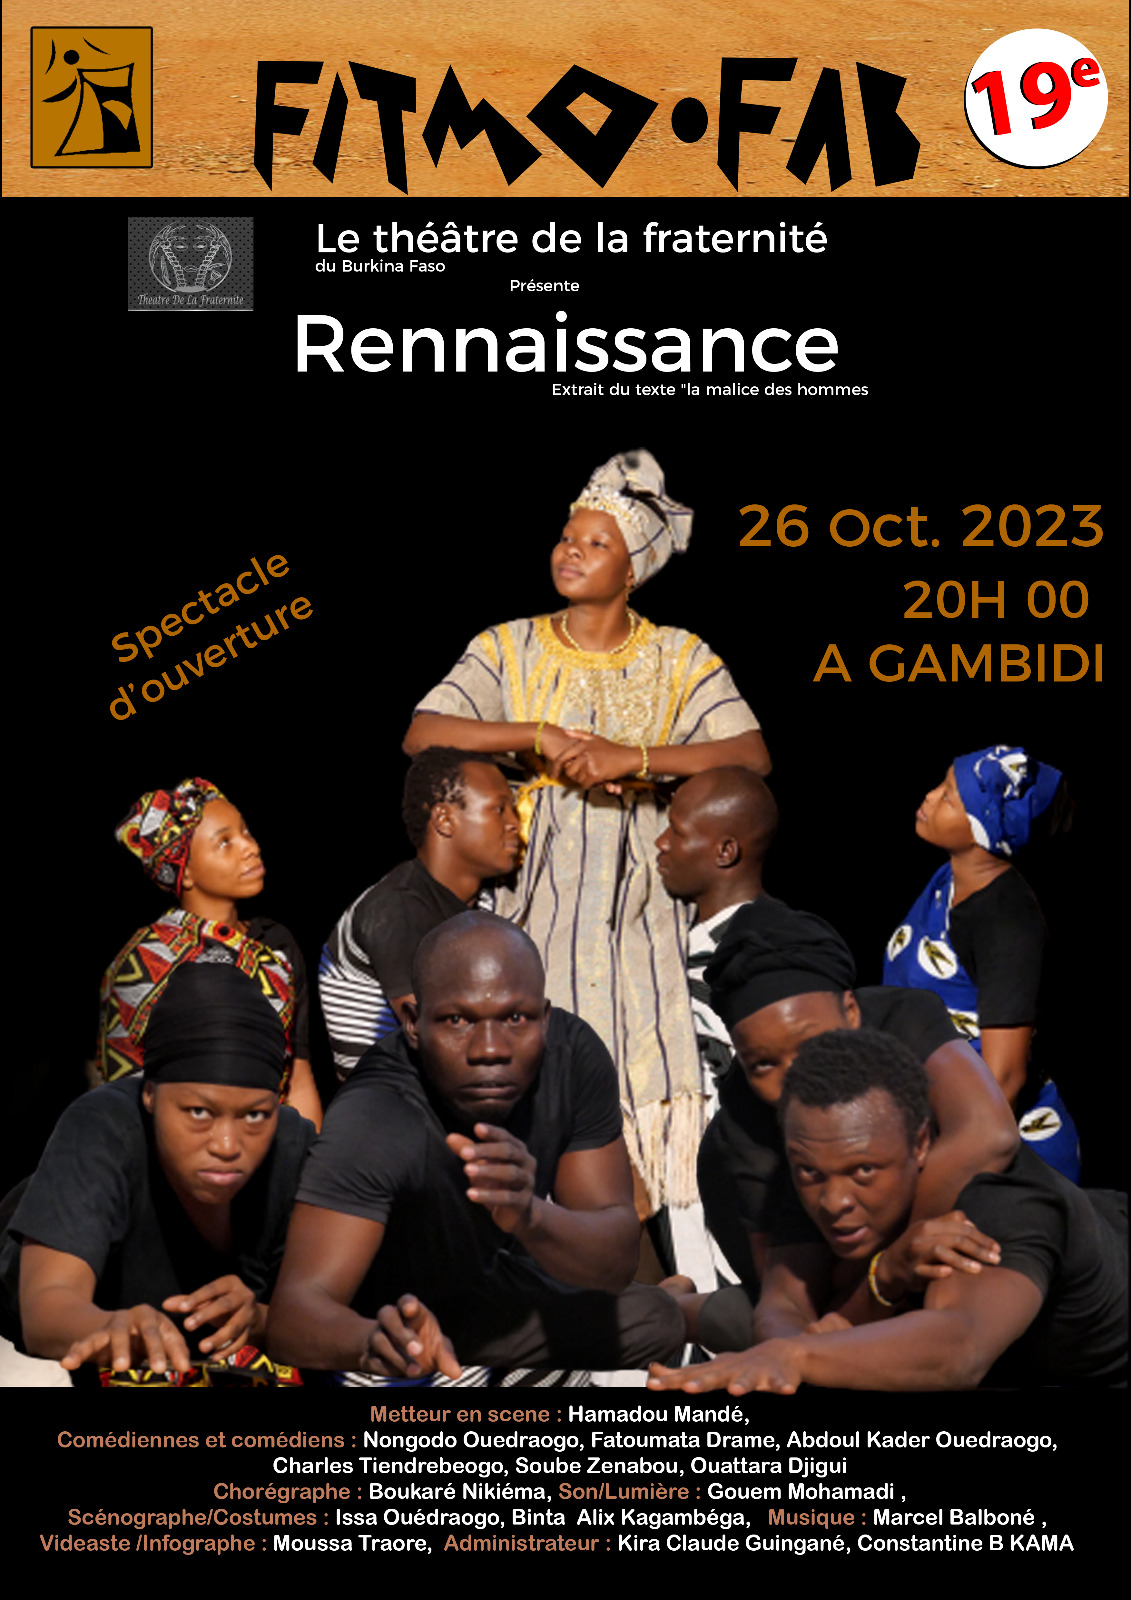 Le théâtre de la fraternité du Burkina Faso présente 